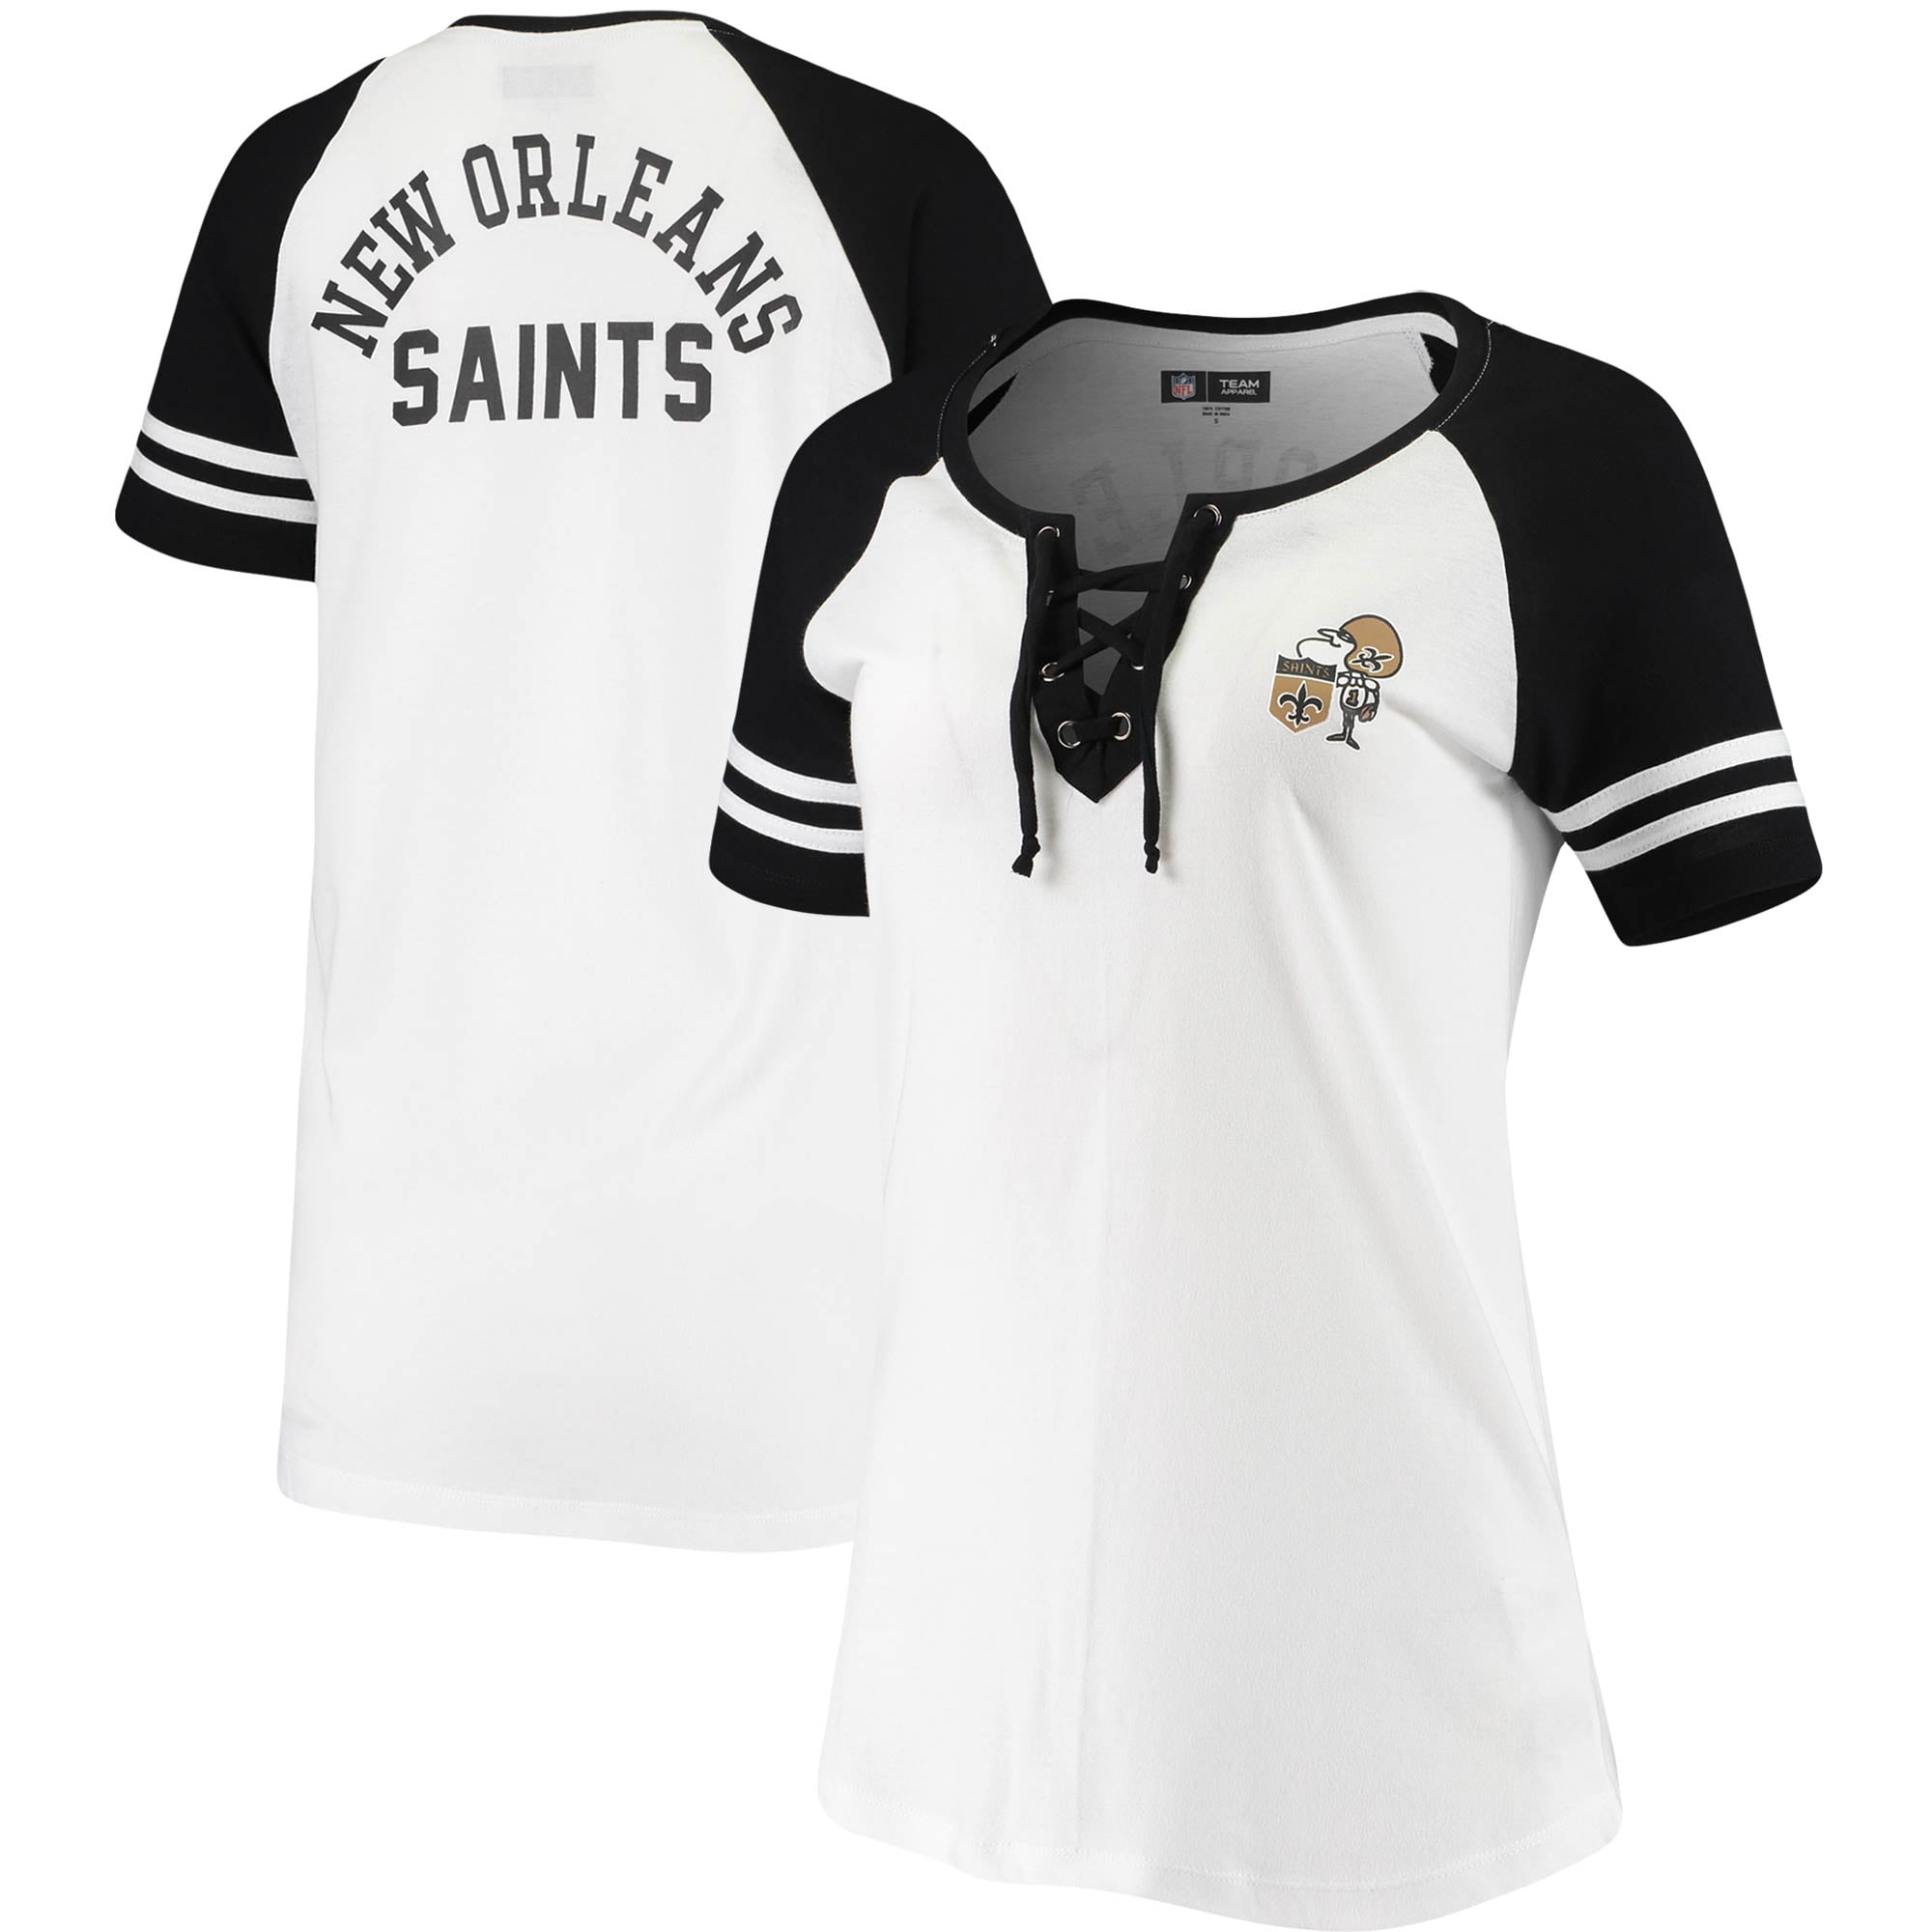 new orleans saints women's t shirts